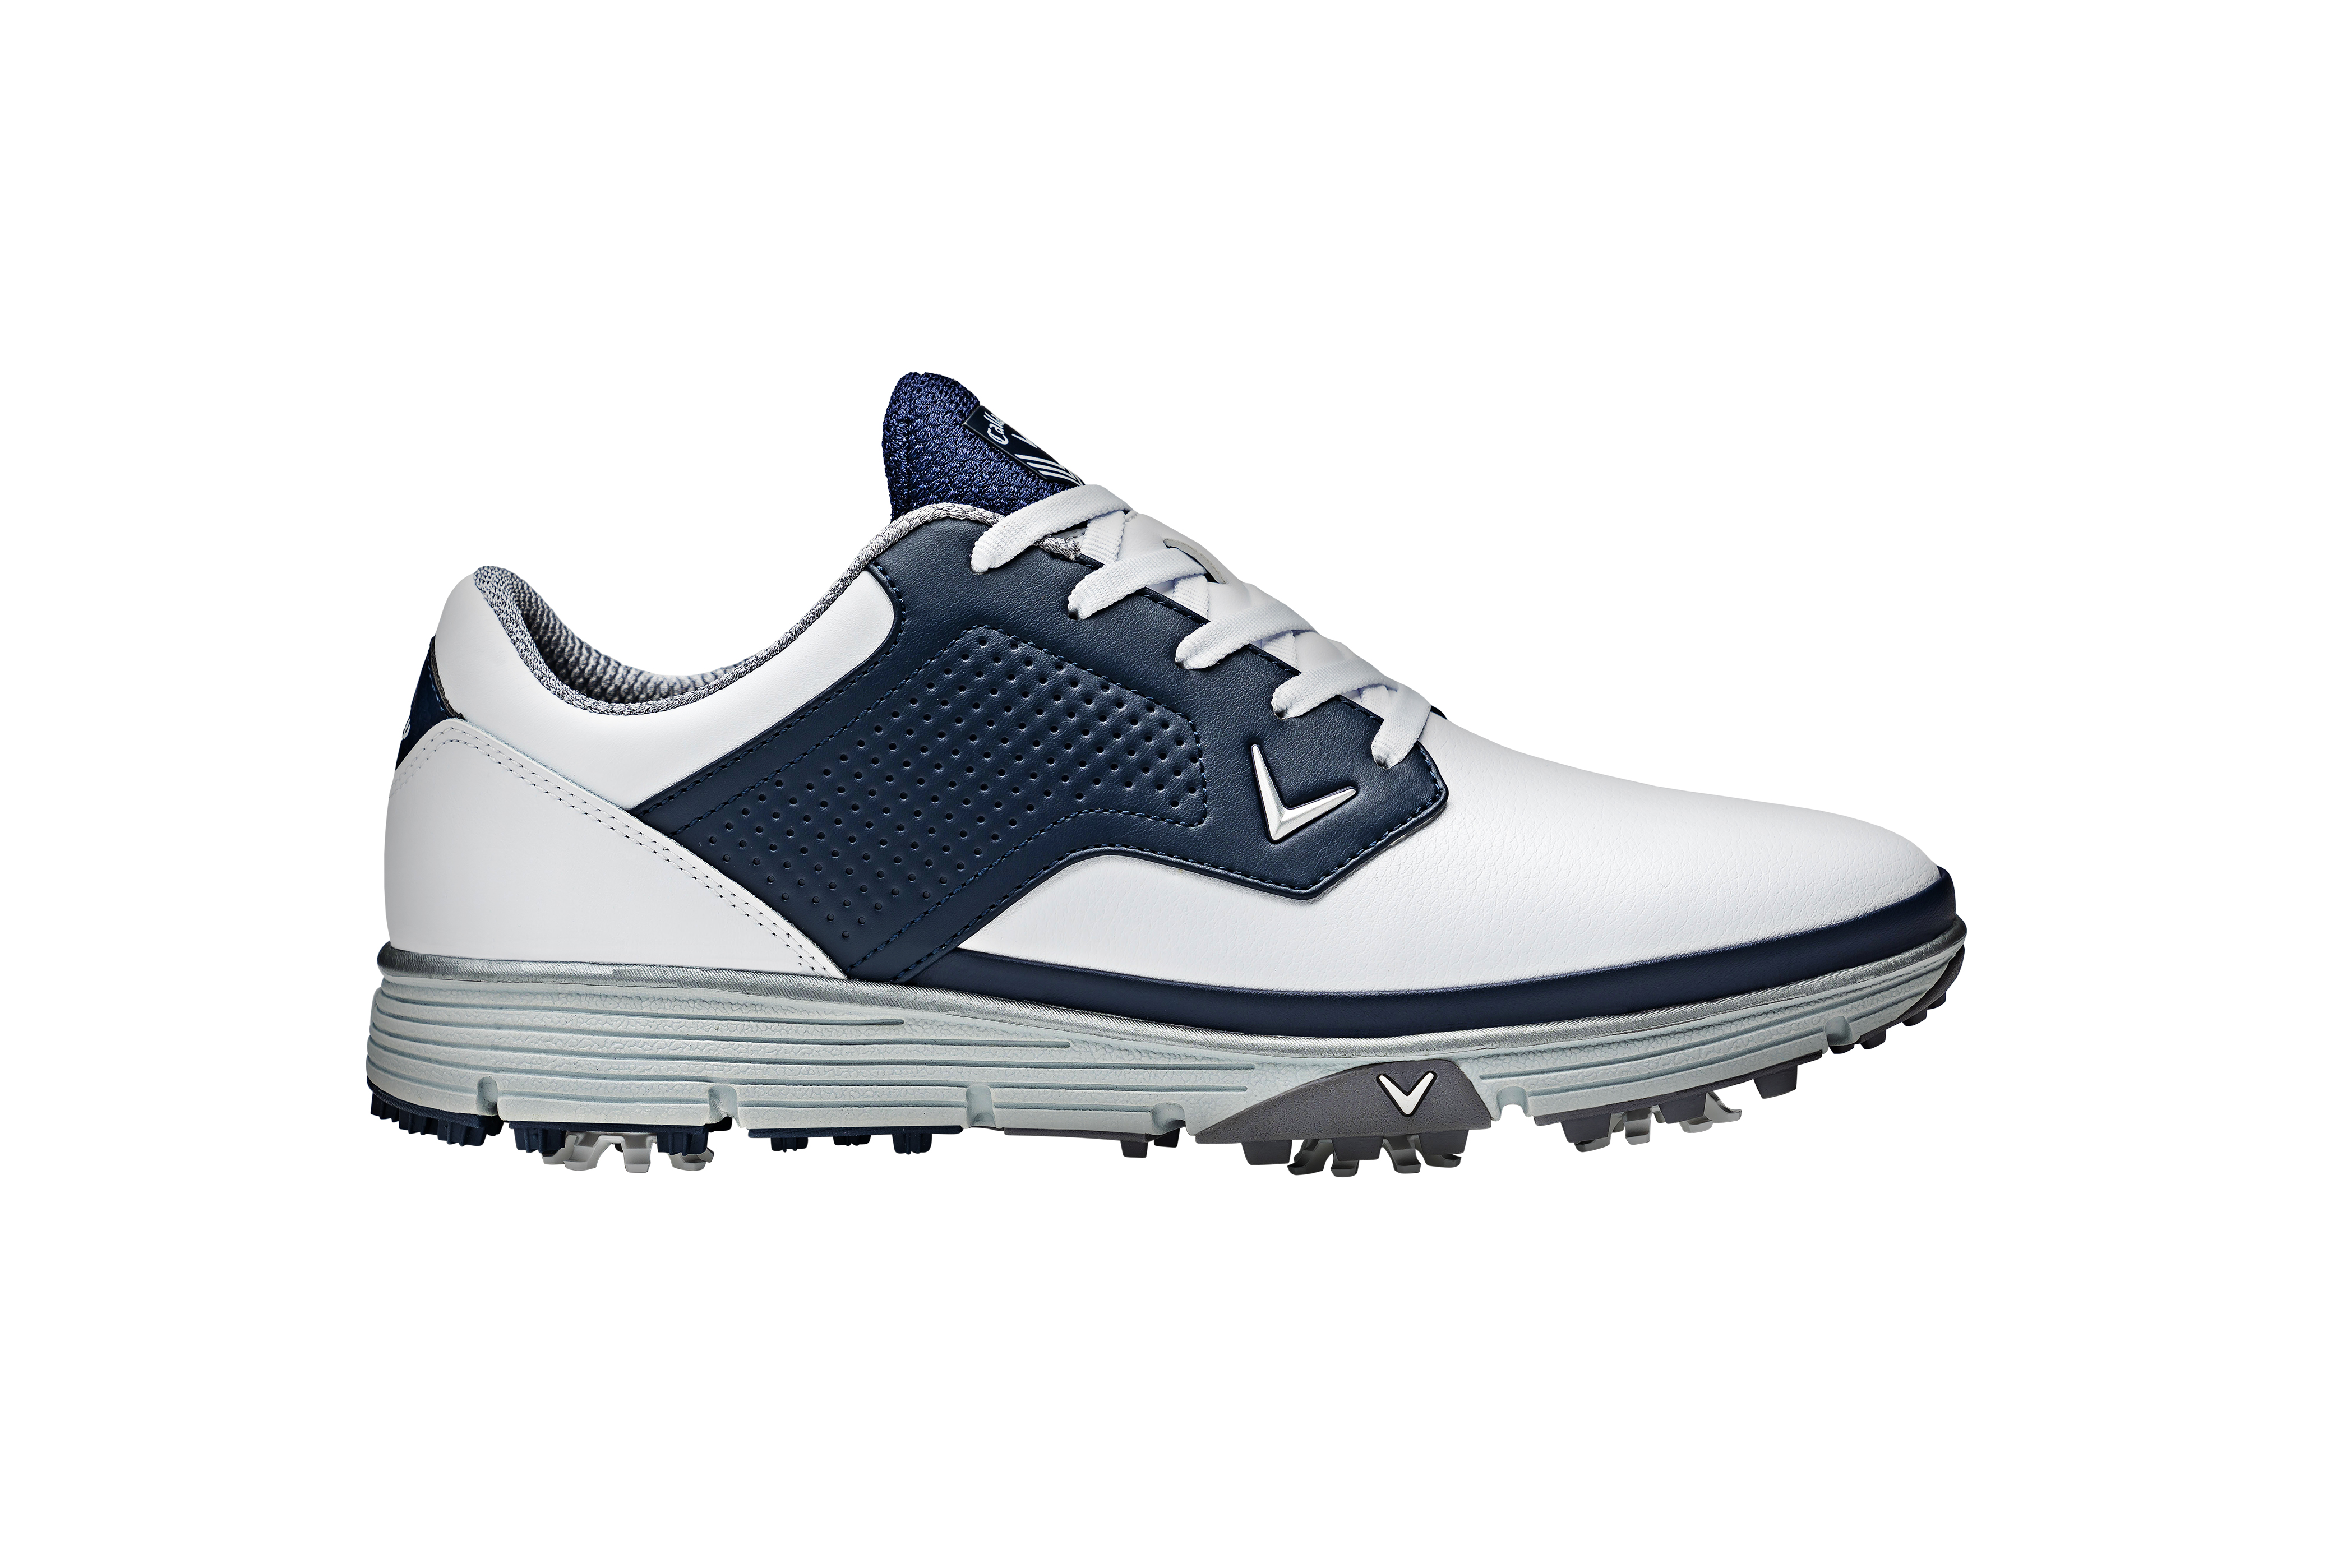 Callaway Mission pánské golfové boty, bílé/tmavě modré, vel. 9,5 UK